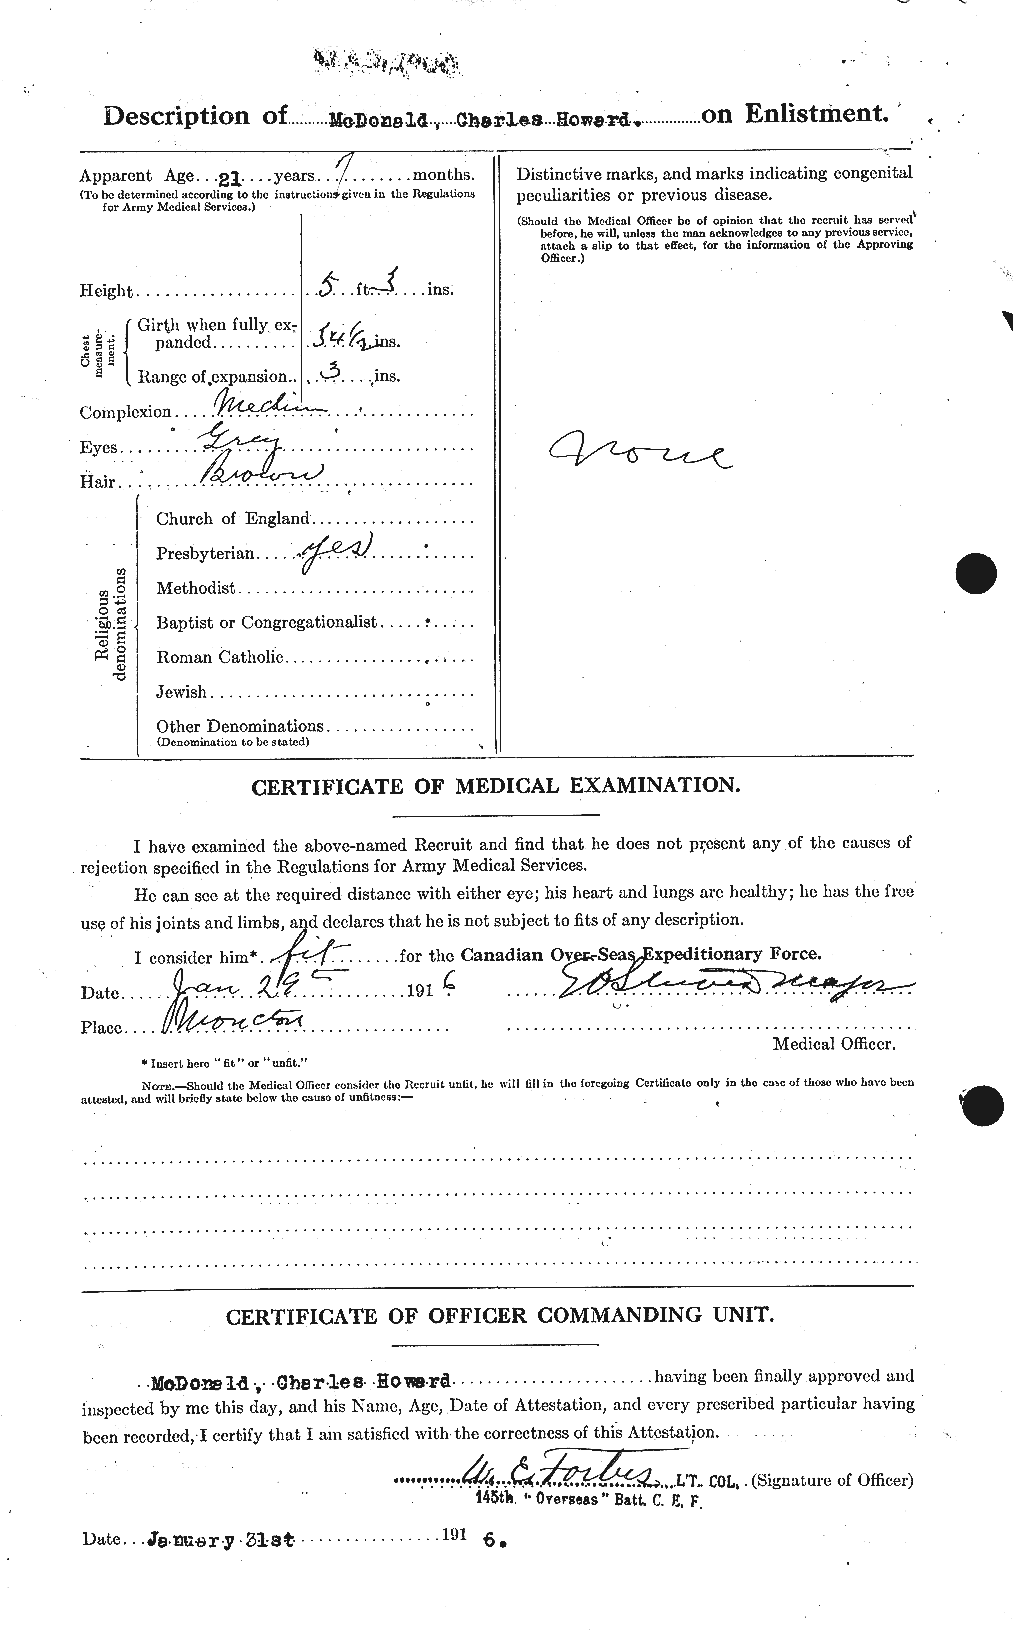 Dossiers du Personnel de la Première Guerre mondiale - CEC 517411b